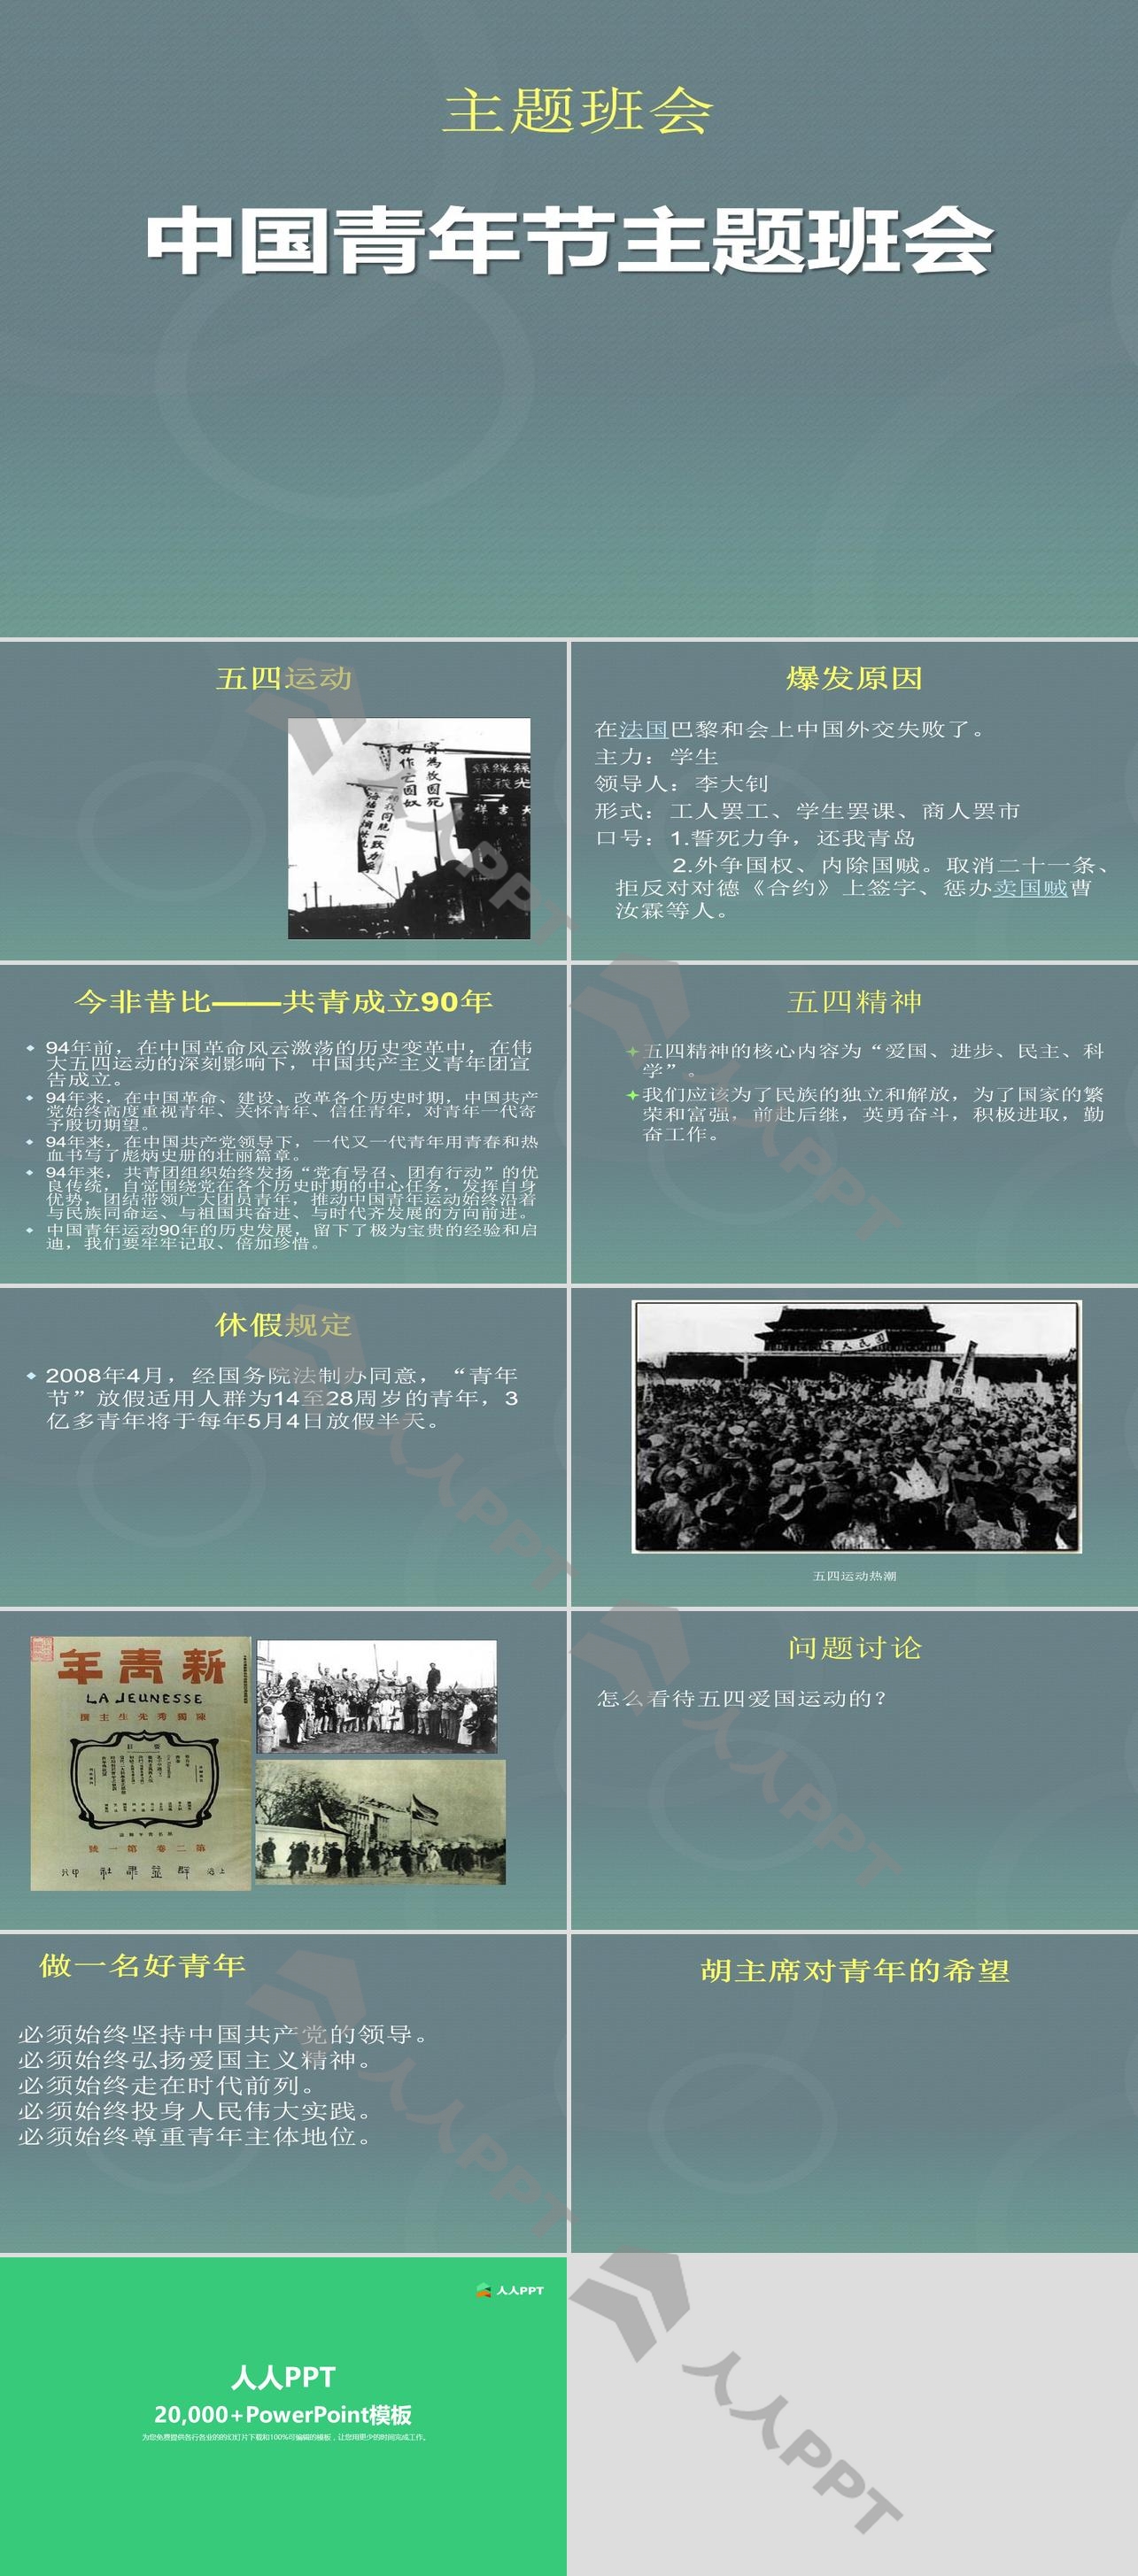 《中国青年节主题班会》PPT下载长图